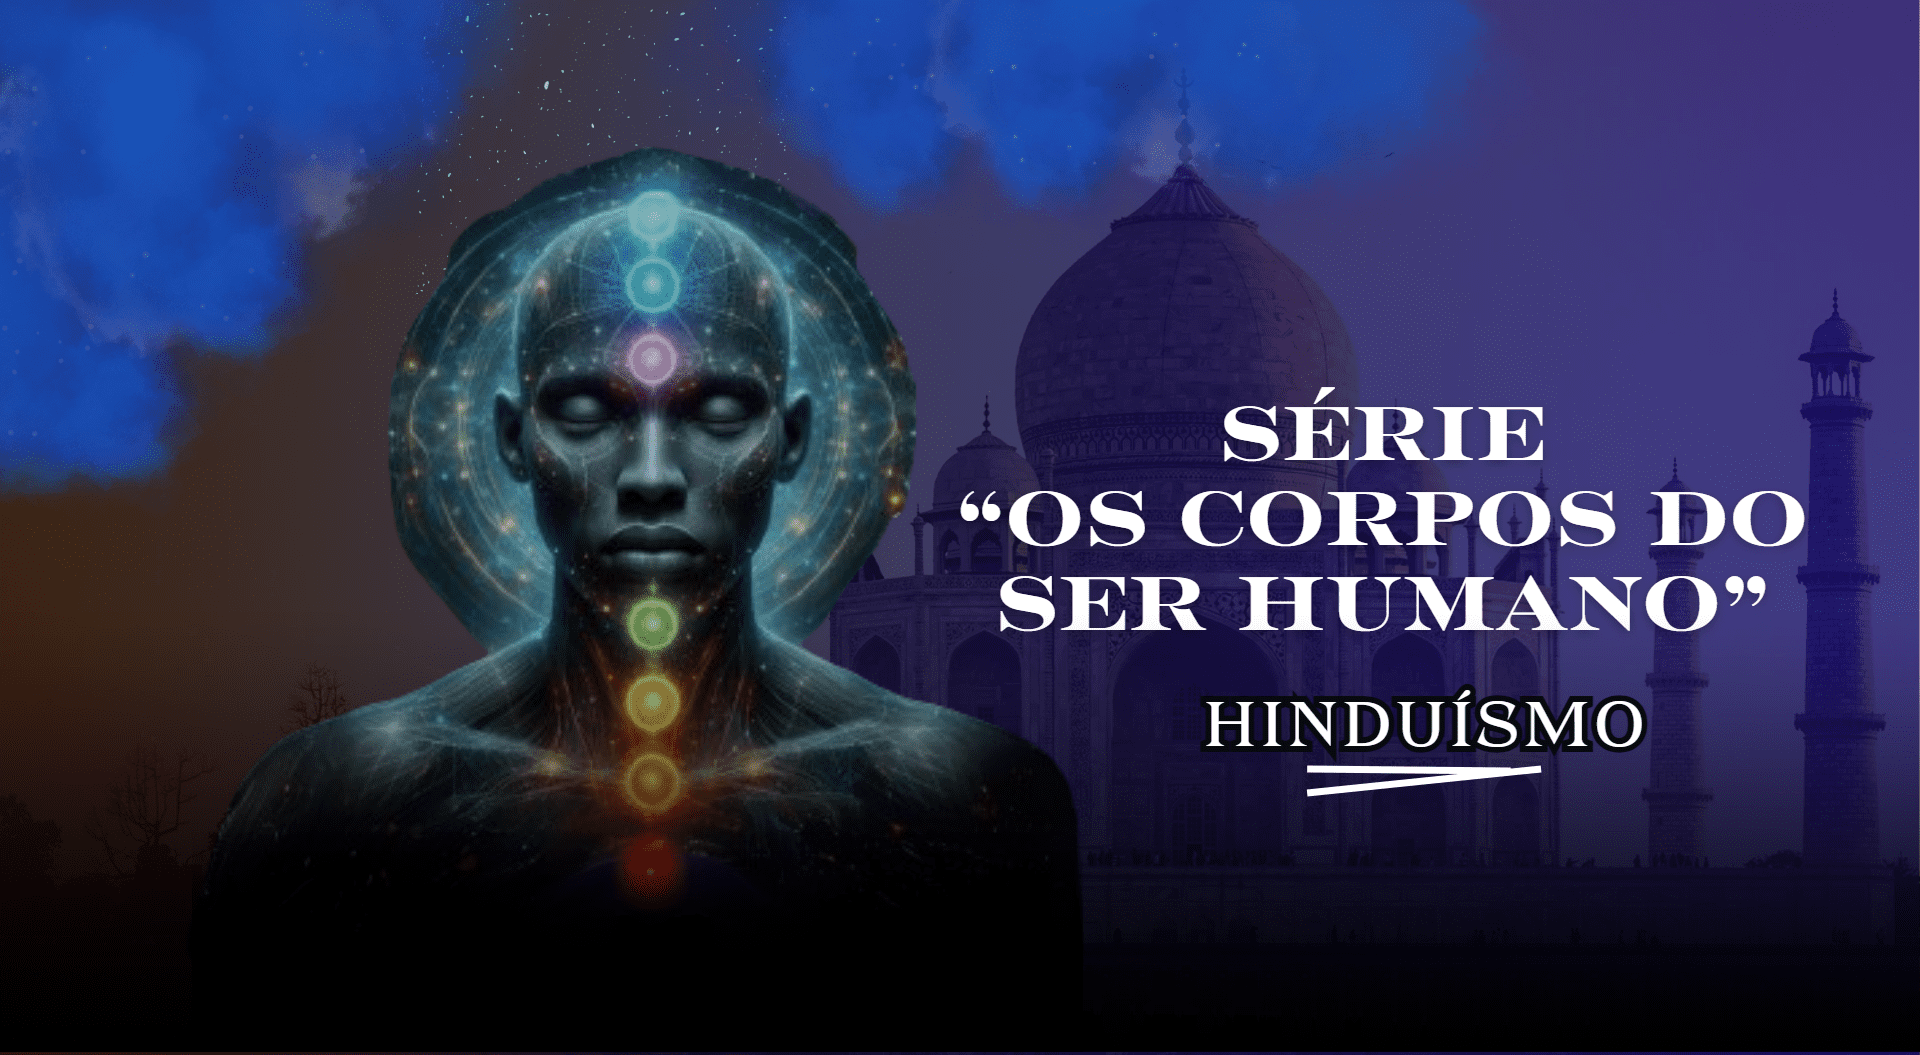 Série “Os corpos do ser humano”: Hinduísmo